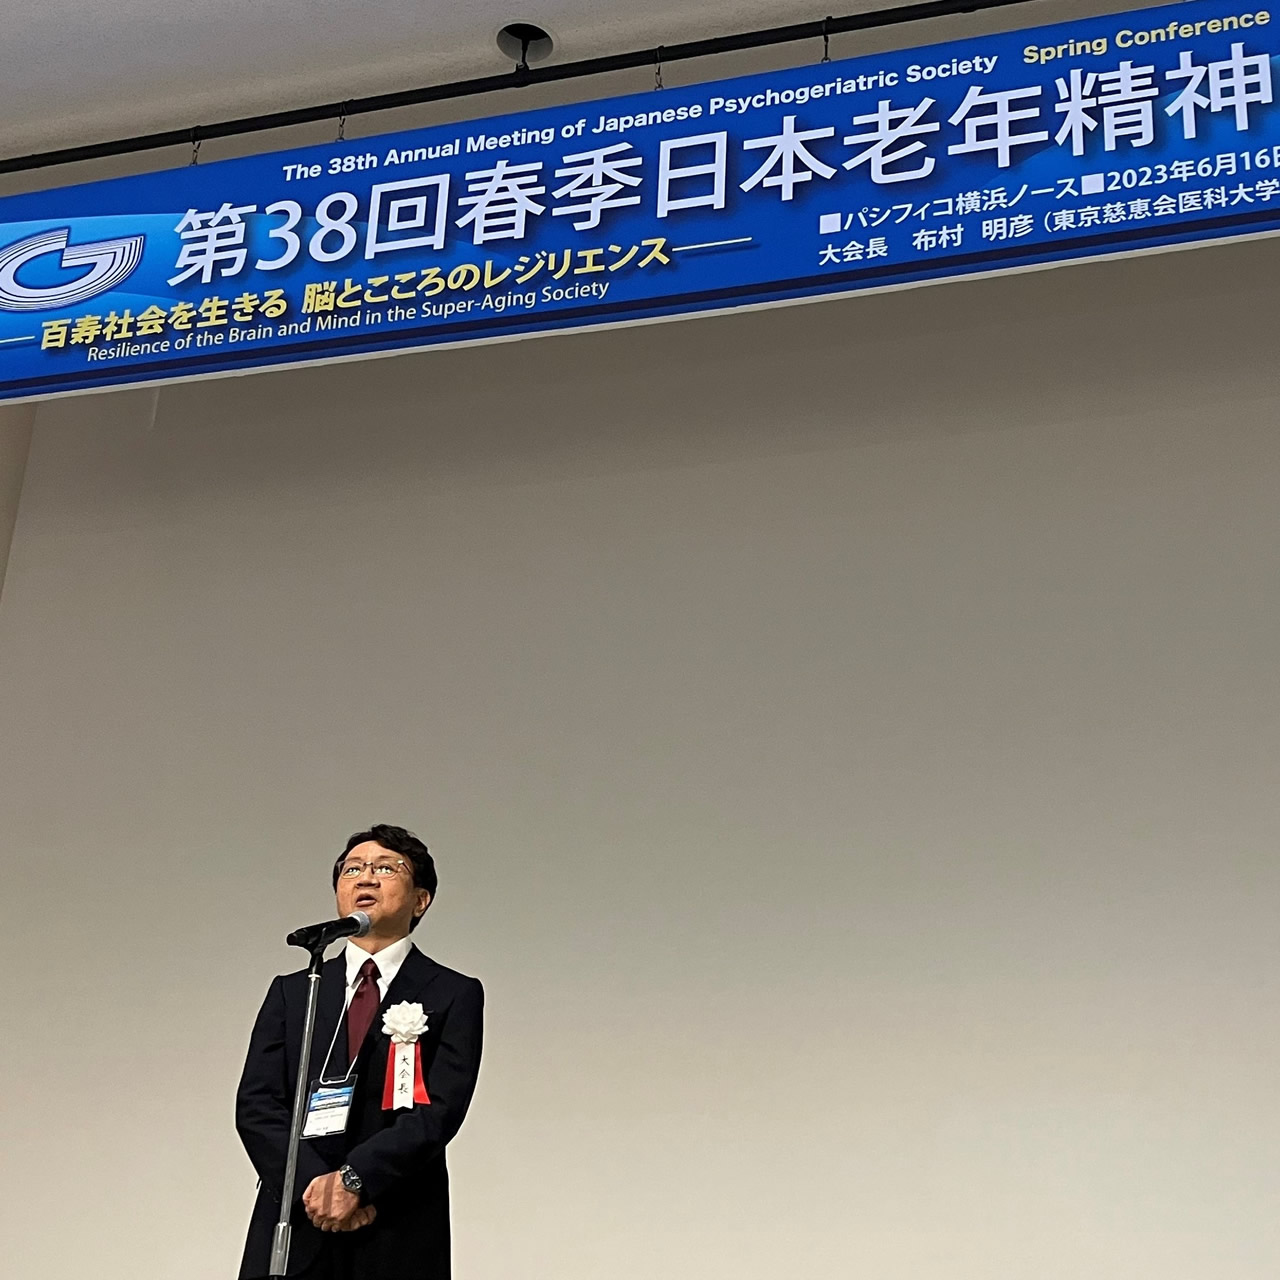 布村明彦教授、第38回日本老年精神医学会大会（春季）を開催